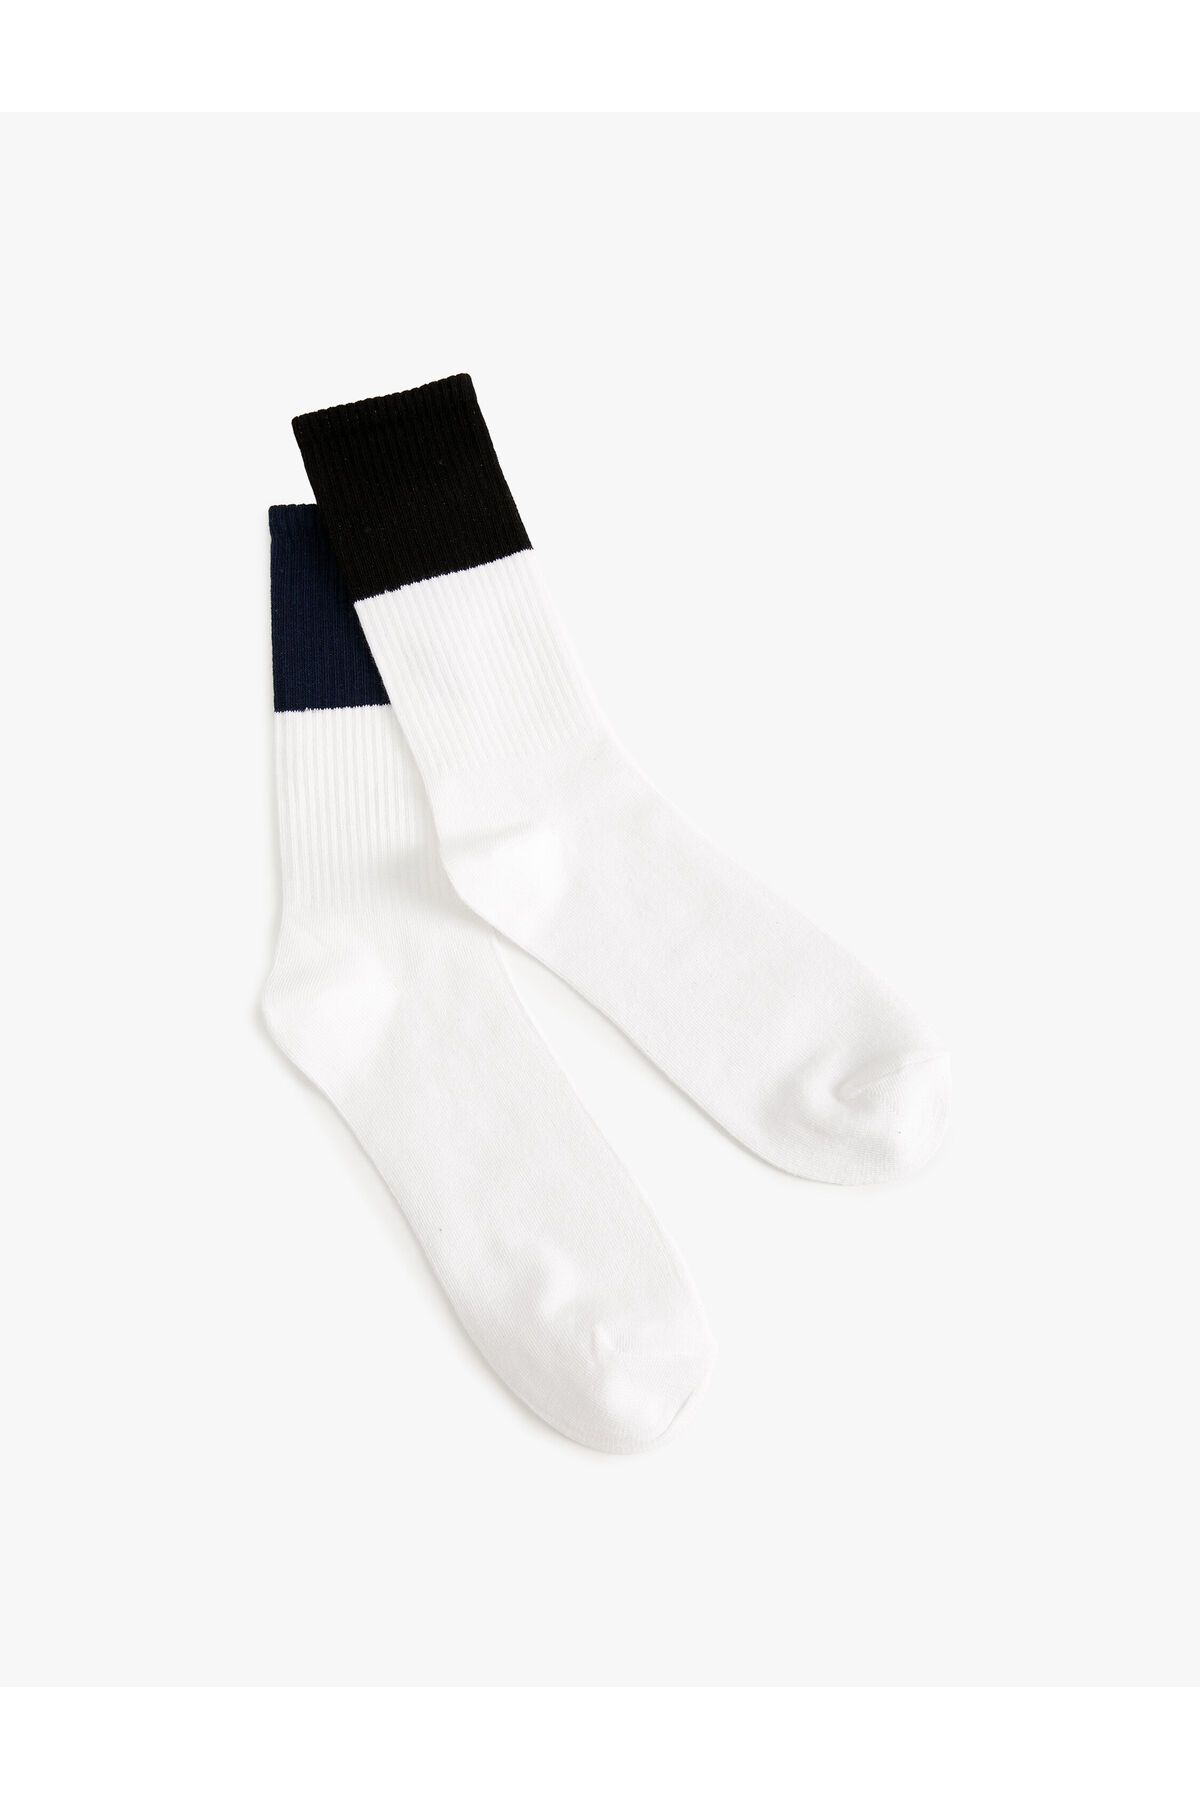 Koton Tenis Çorabı Pamuk Karışımlı Renk Bloklu